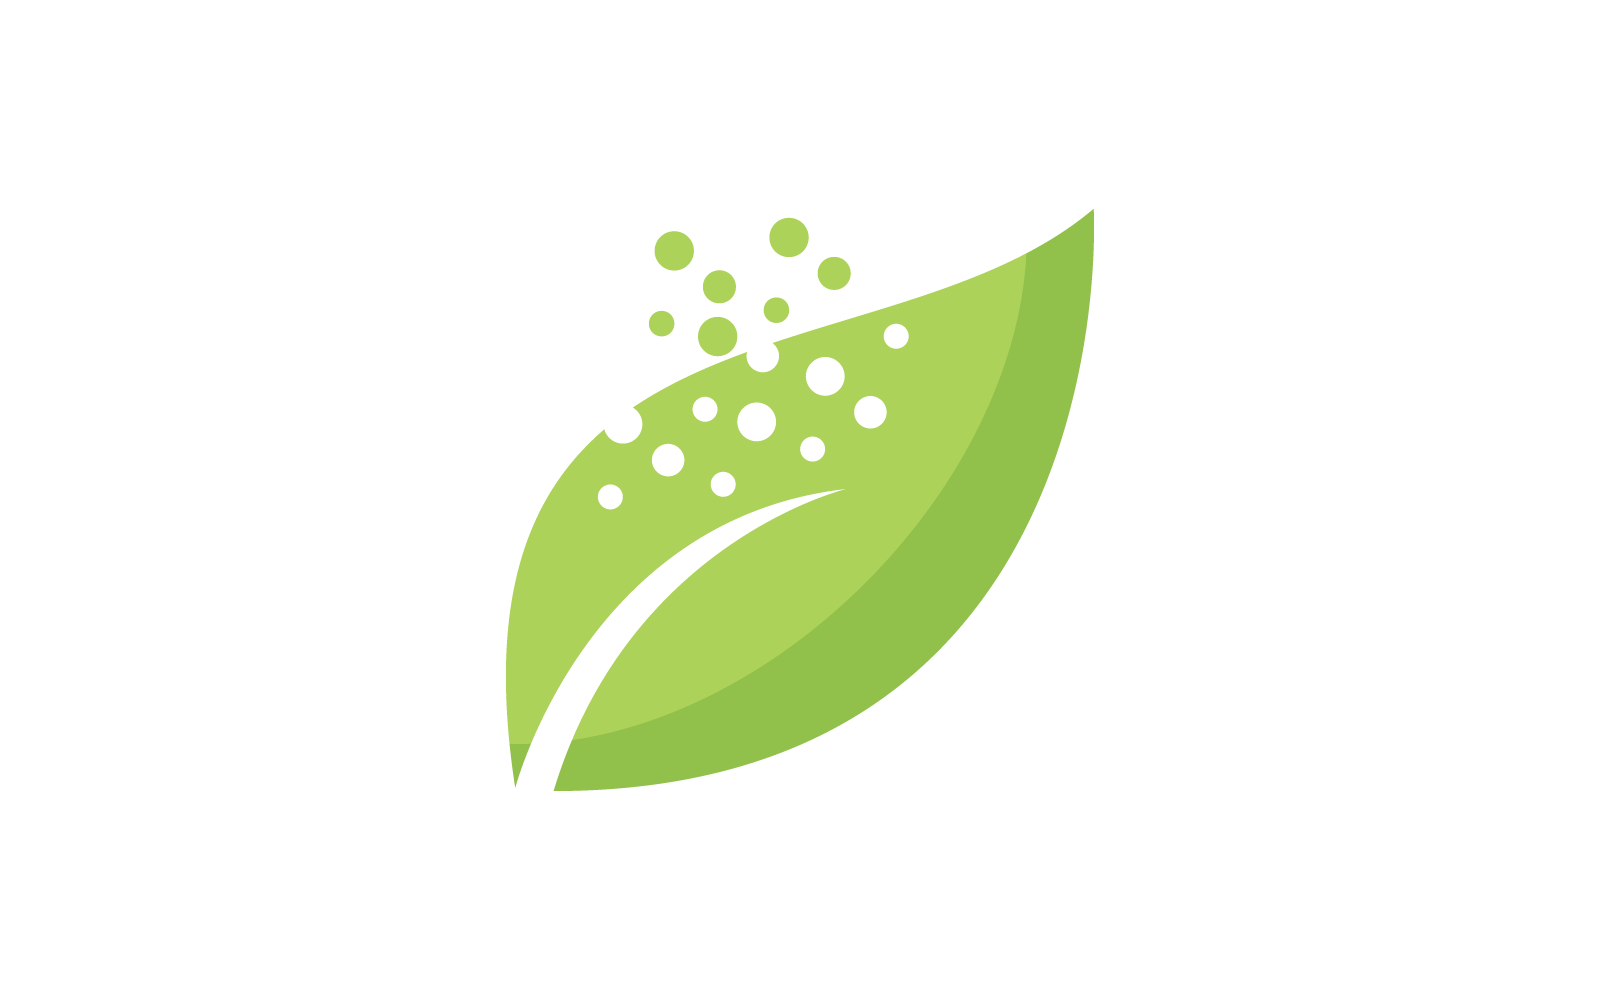 Eco care logo green leaf illustration flat design Logo Template